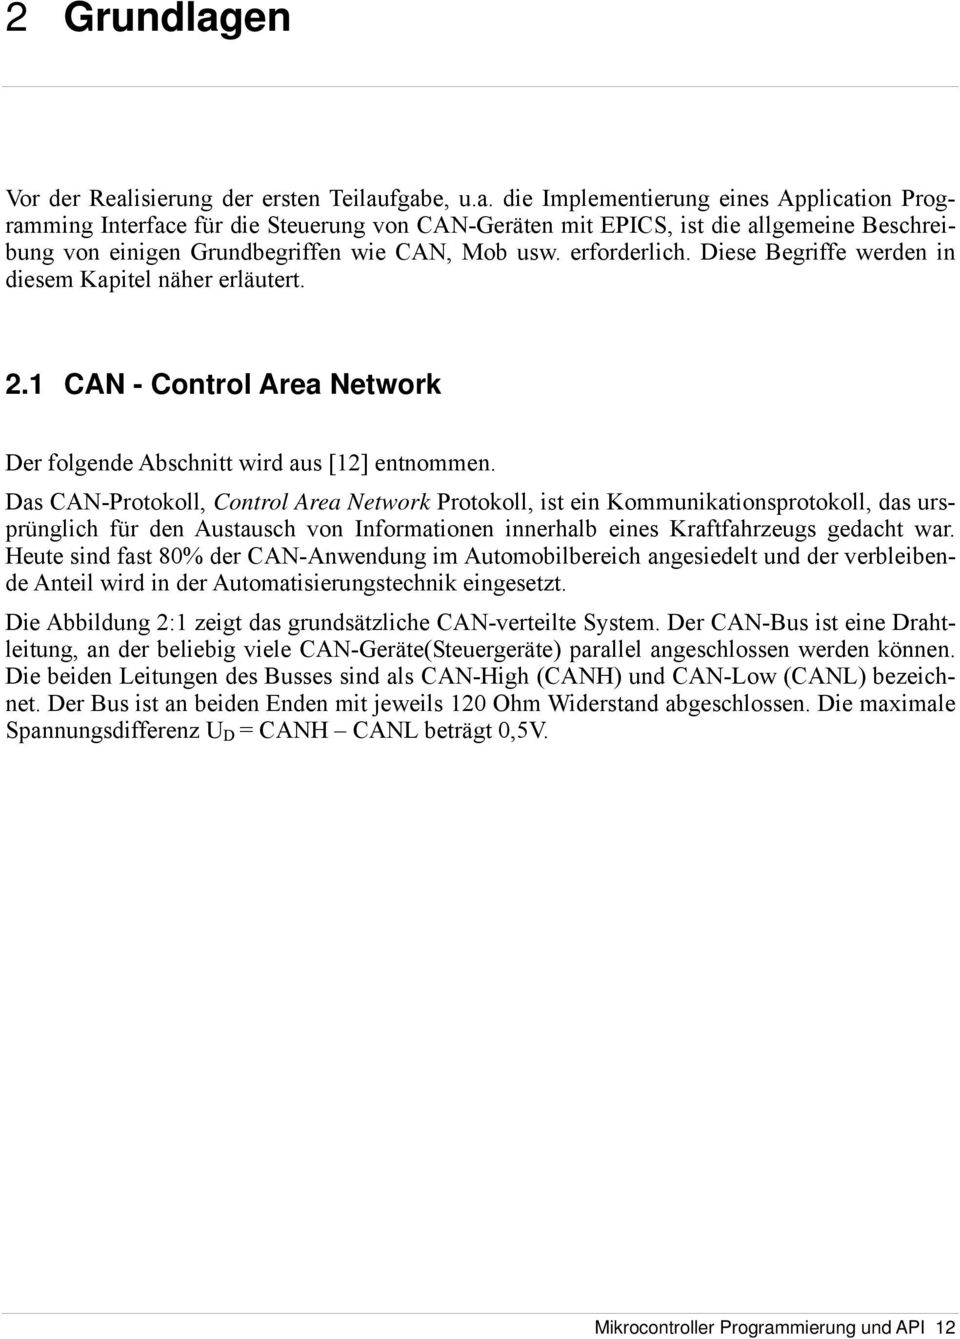 Das CAN-Protokoll, Control Area Network Protokoll, ist ein Kommunikationsprotokoll, das ursprünglich für den Austausch von Informationen innerhalb eines Kraftfahrzeugs gedacht war.